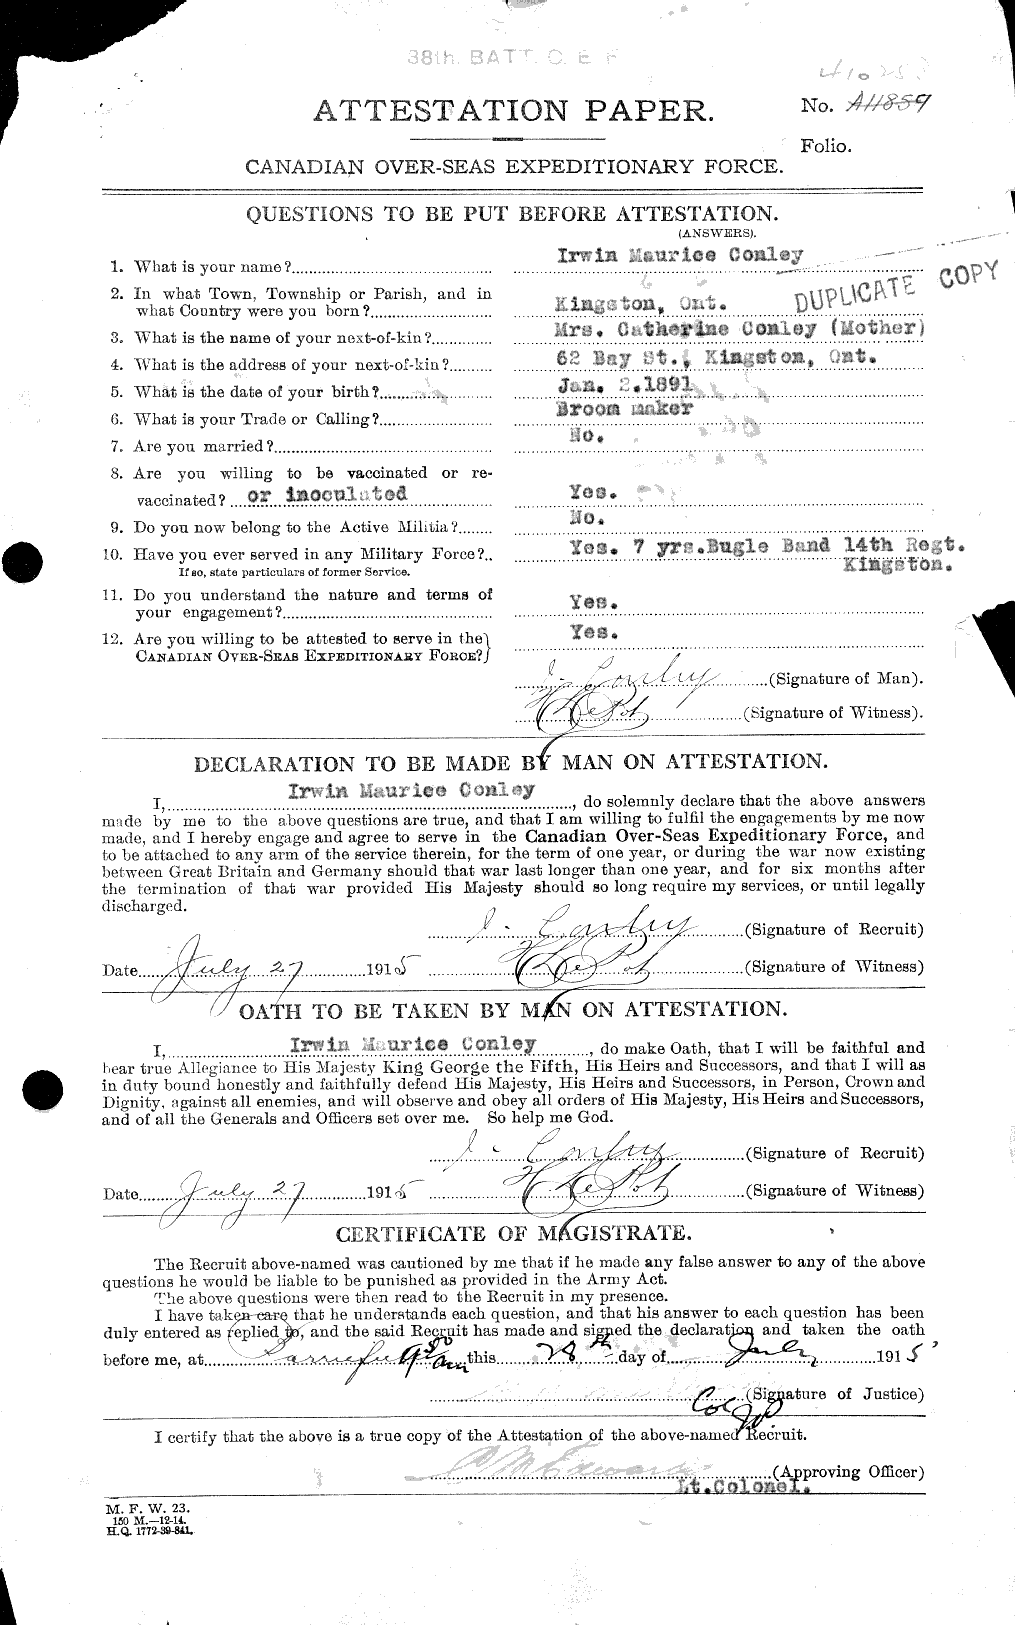 Dossiers du Personnel de la Première Guerre mondiale - CEC 031445a